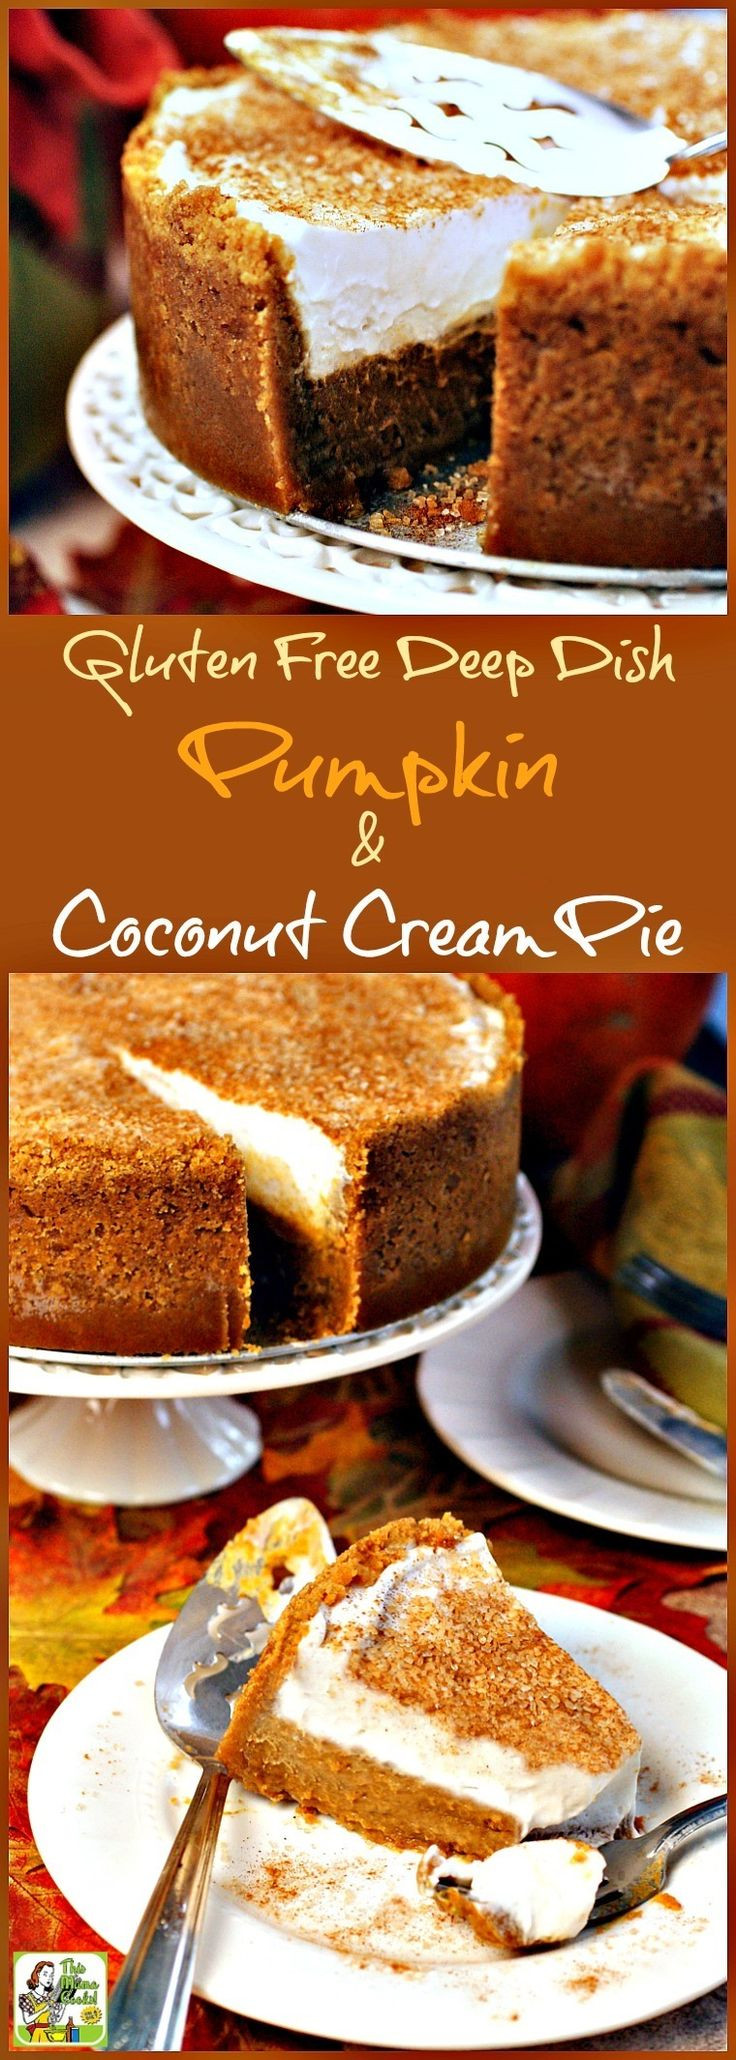 Dairy Free Pumpkin Desserts
 Not only is this pumpkin dessert recipe gluten free and